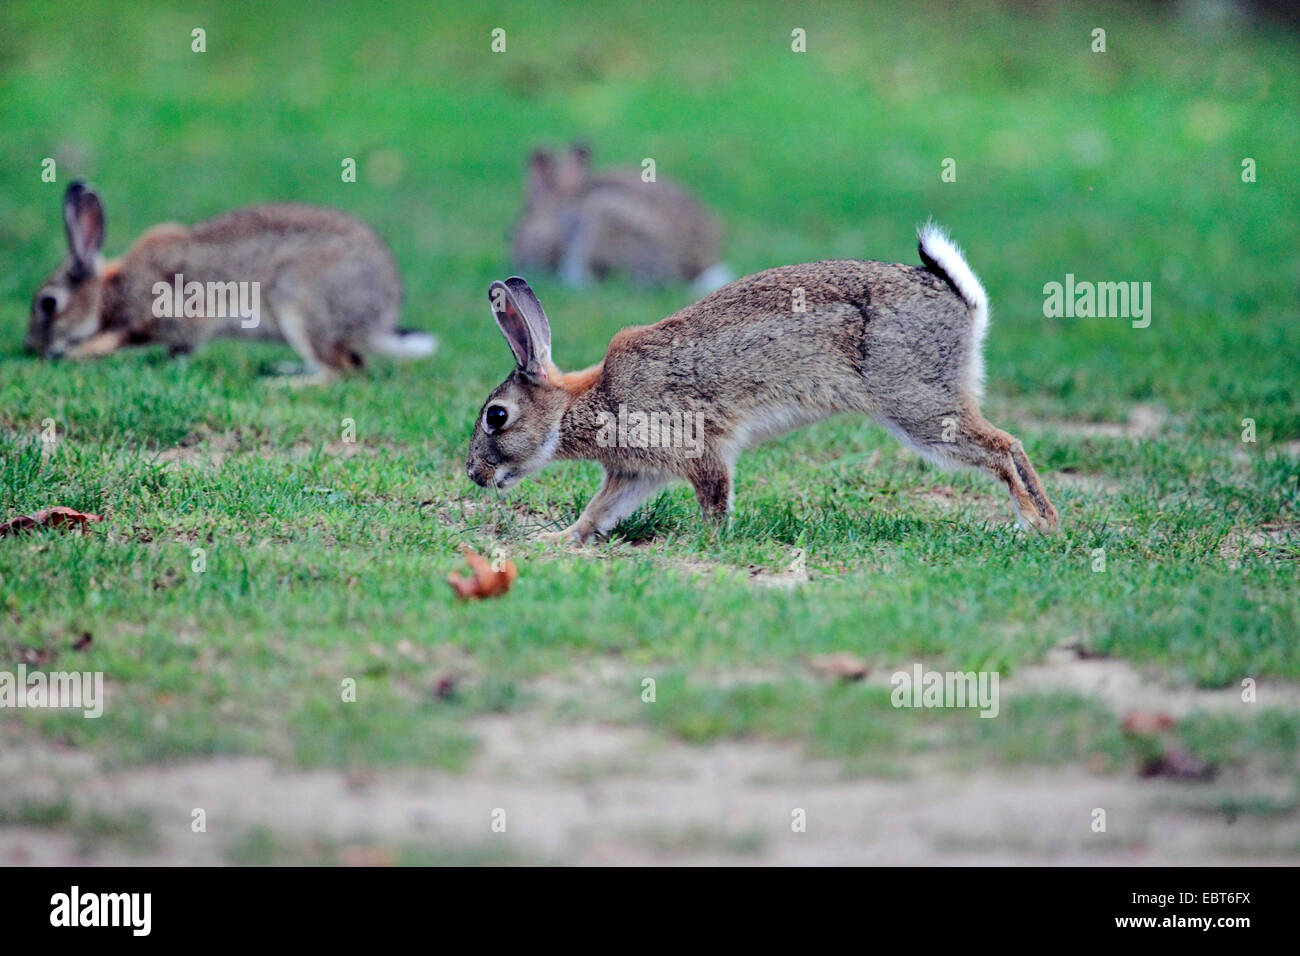 Lapin de garenne (Oryctolagus cuniculus), les lapins sauvages à la recherche de nourriture dans un pré, Allemagne Banque D'Images